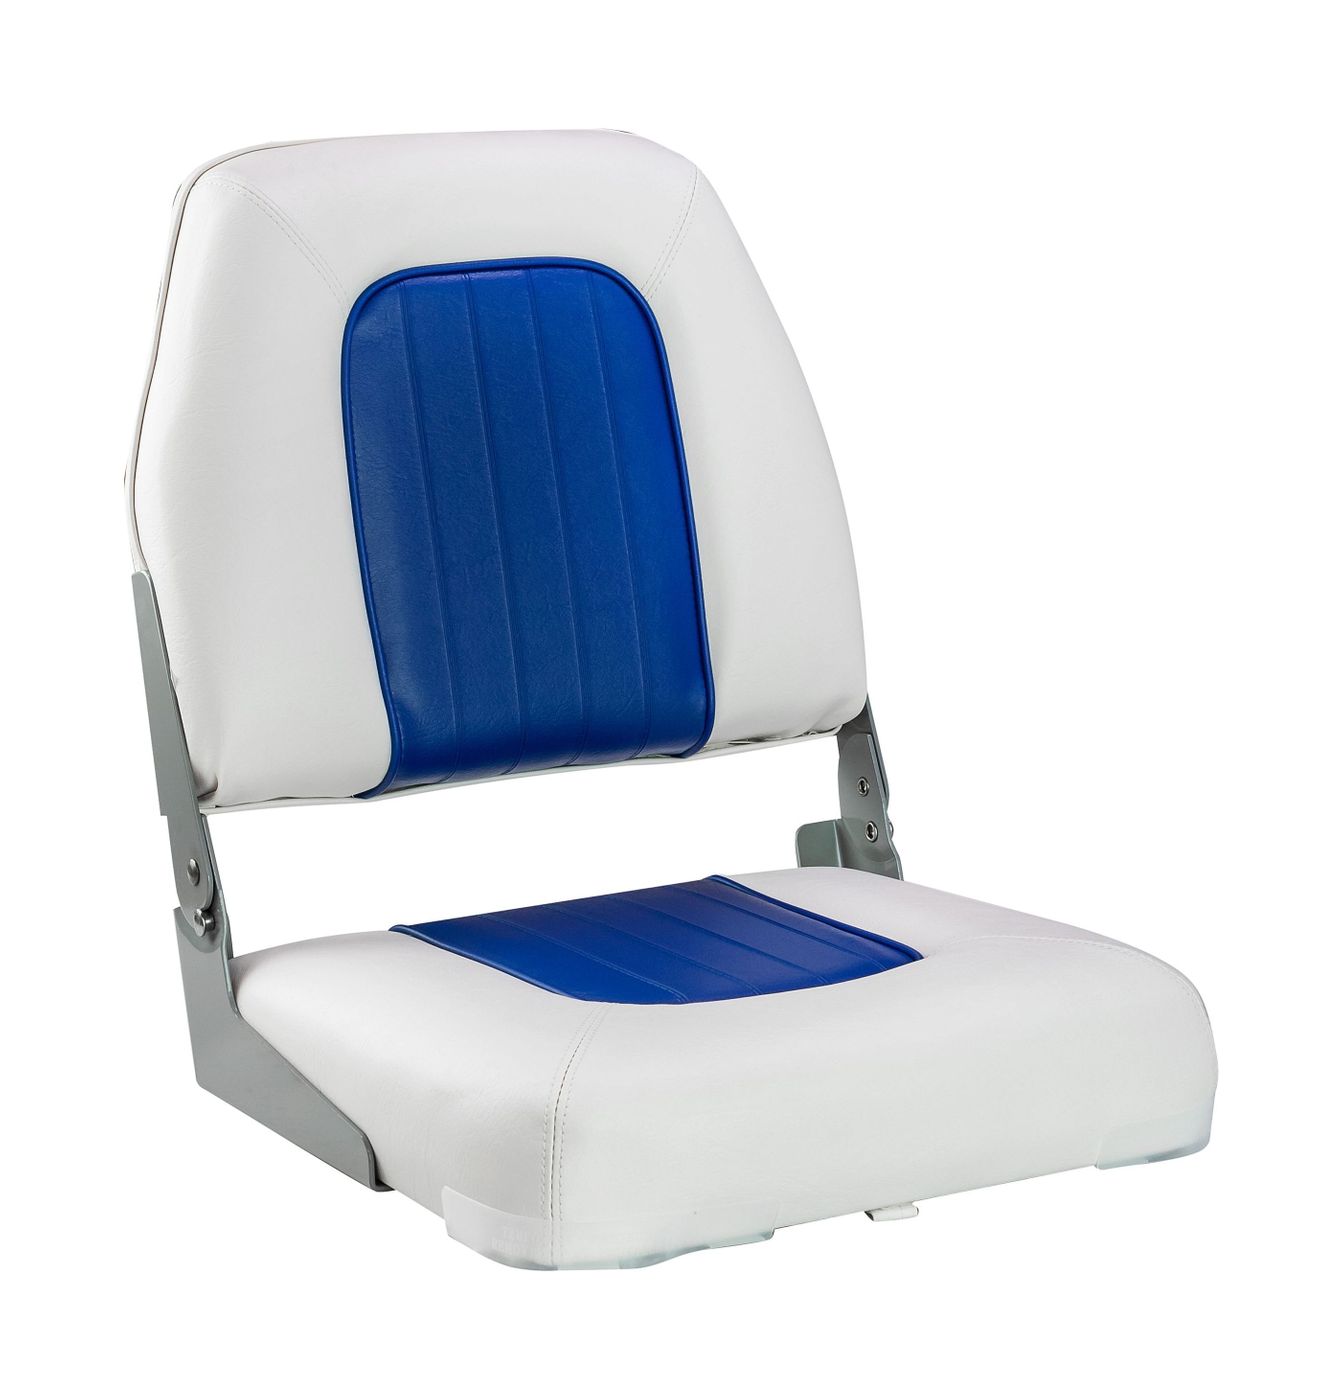 Кресло мягкое складное Deluxe, обивка винил, цвет белый/синий, Marine Rocket 75137WB-MR кресло мягкое deluxe sport с откидным валиком белый синий 1043251